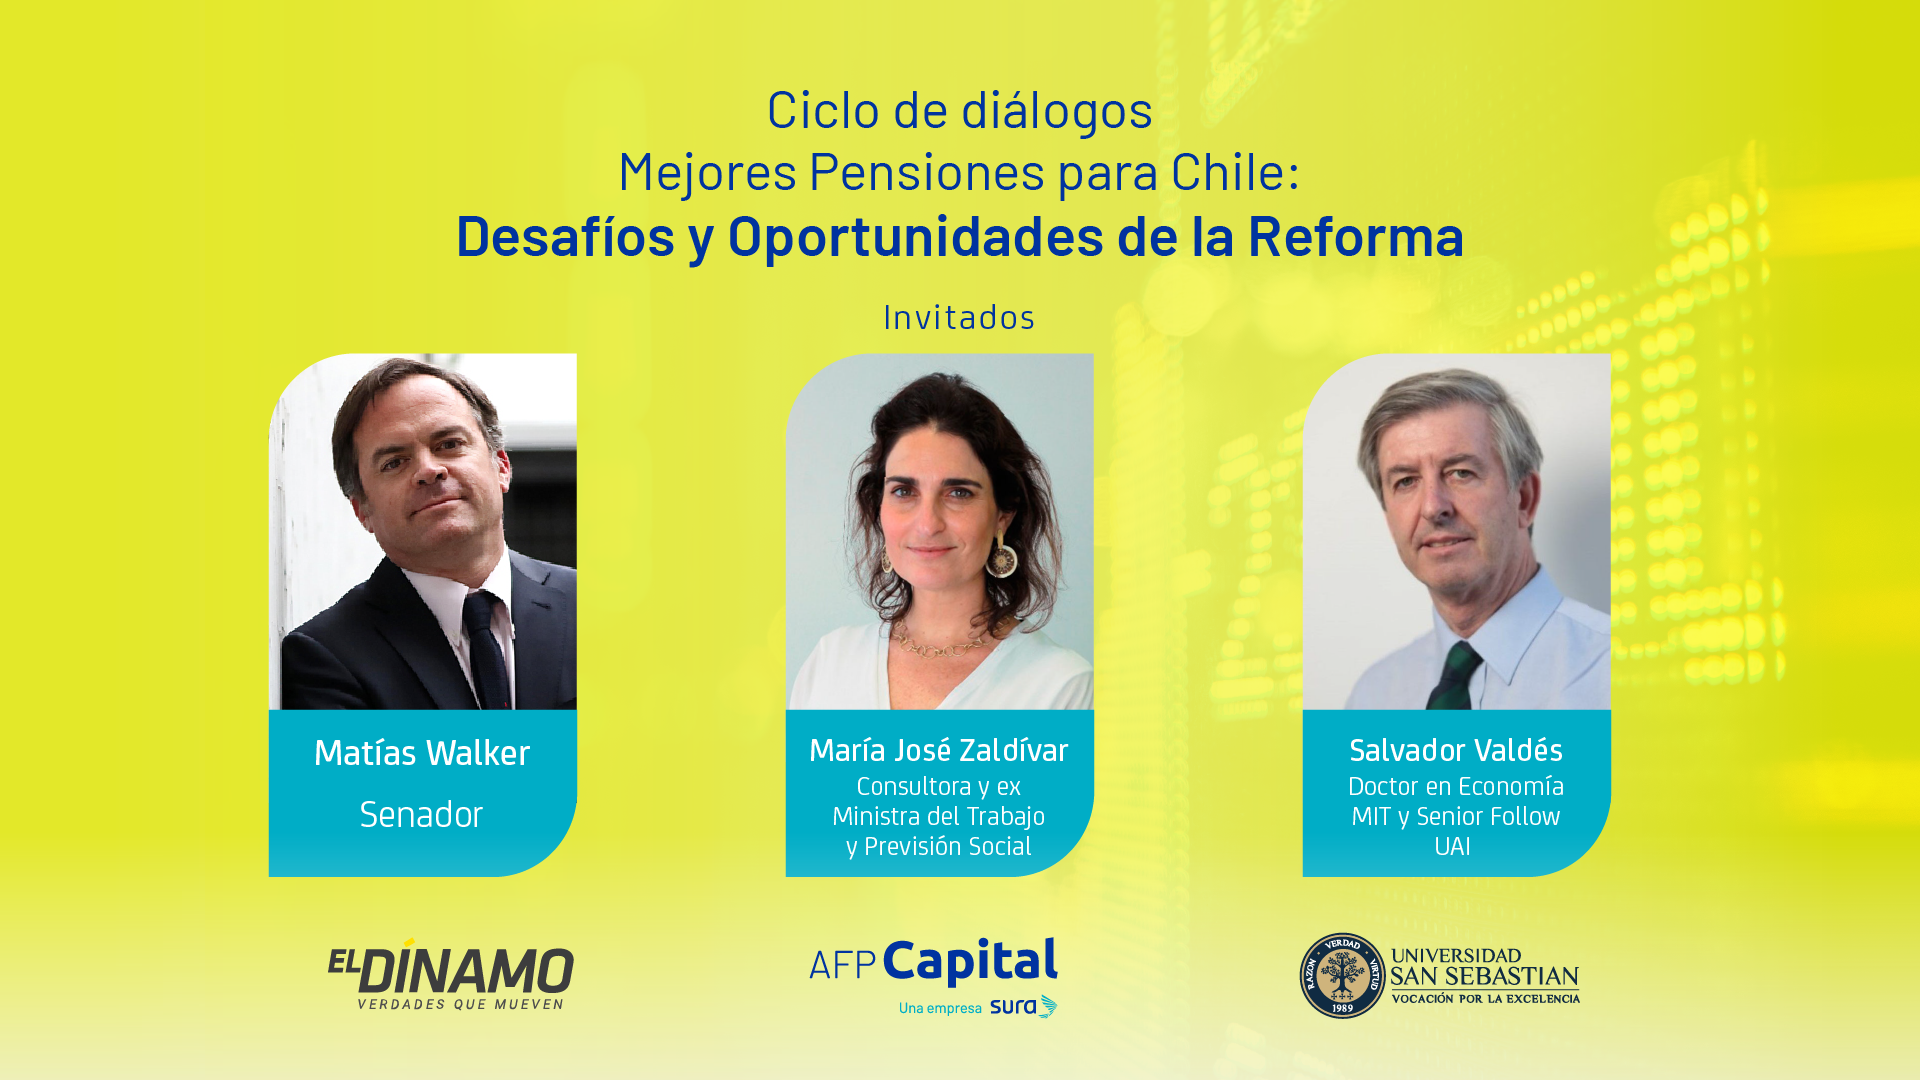 Primer Ciclo de Diálogos “Mejores Pensiones para Chile: Desafíos y oportunidades de la Reforma”.